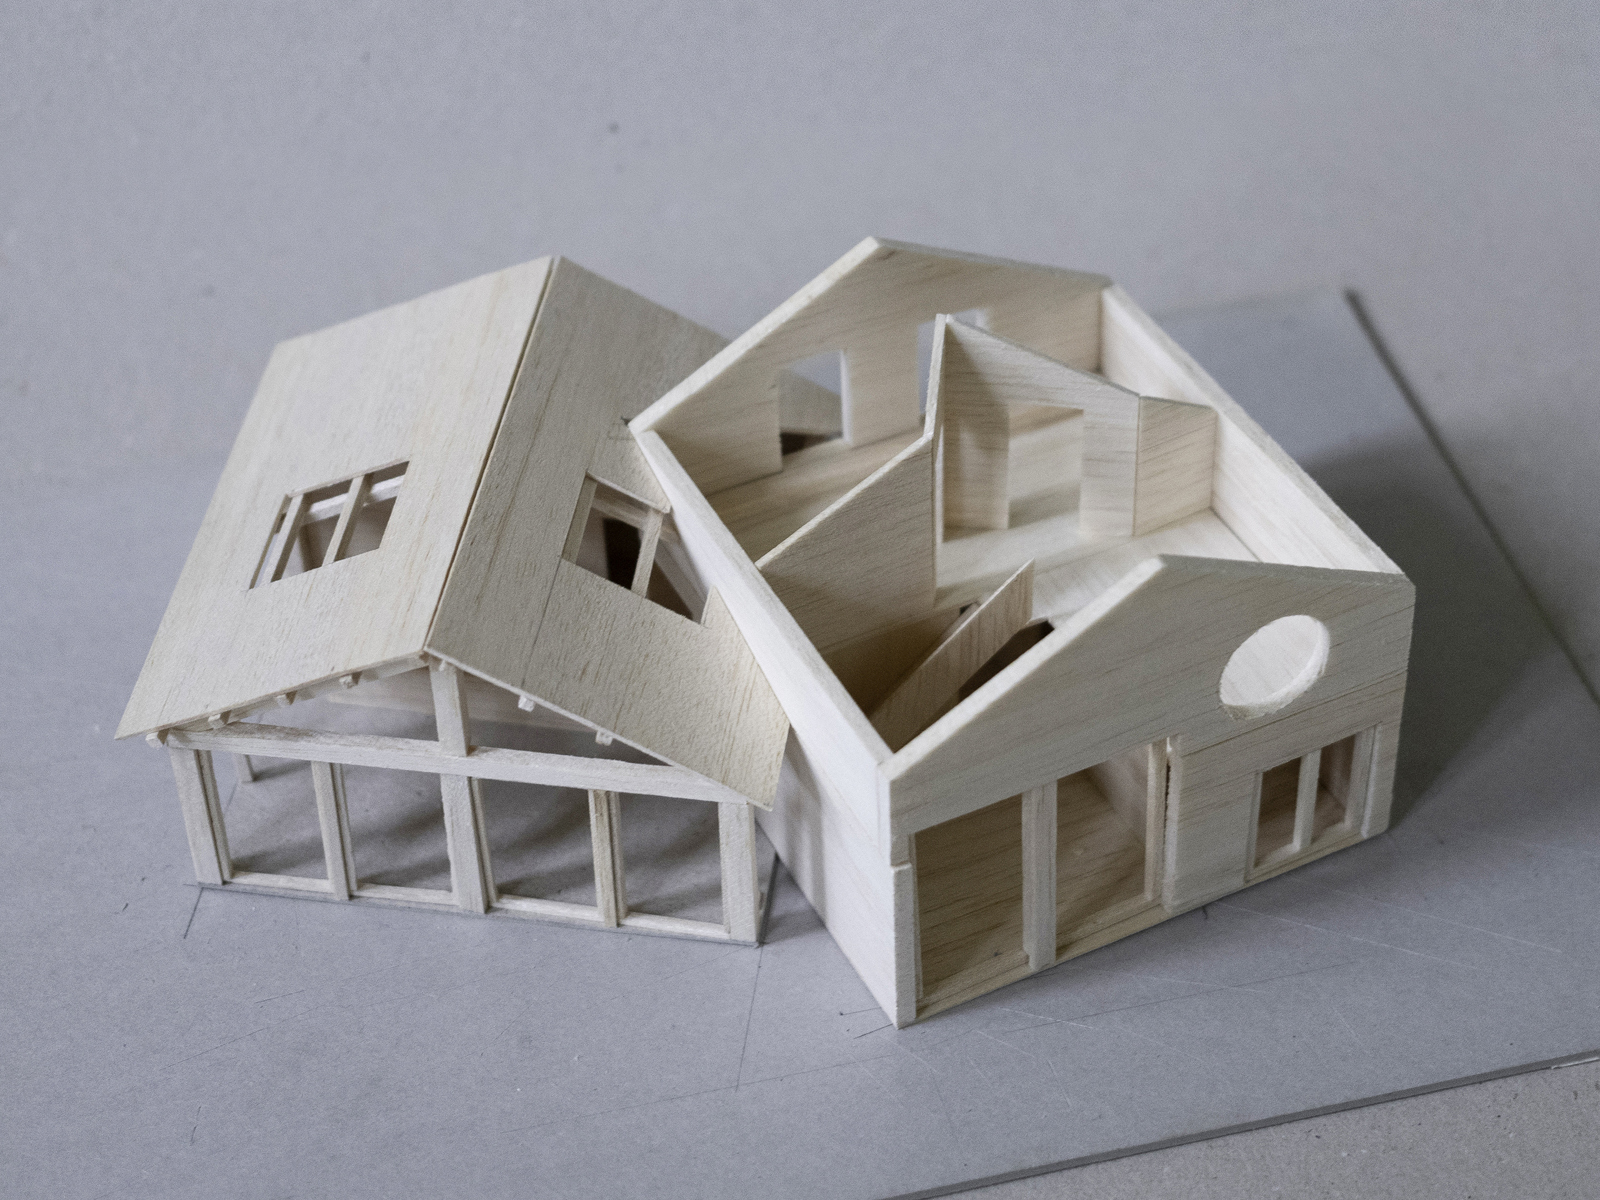 Modell i tre av to hus som kjærer inn i hverandre, taket er tatt av på det ene huset og man kan se innsiden. Foto.